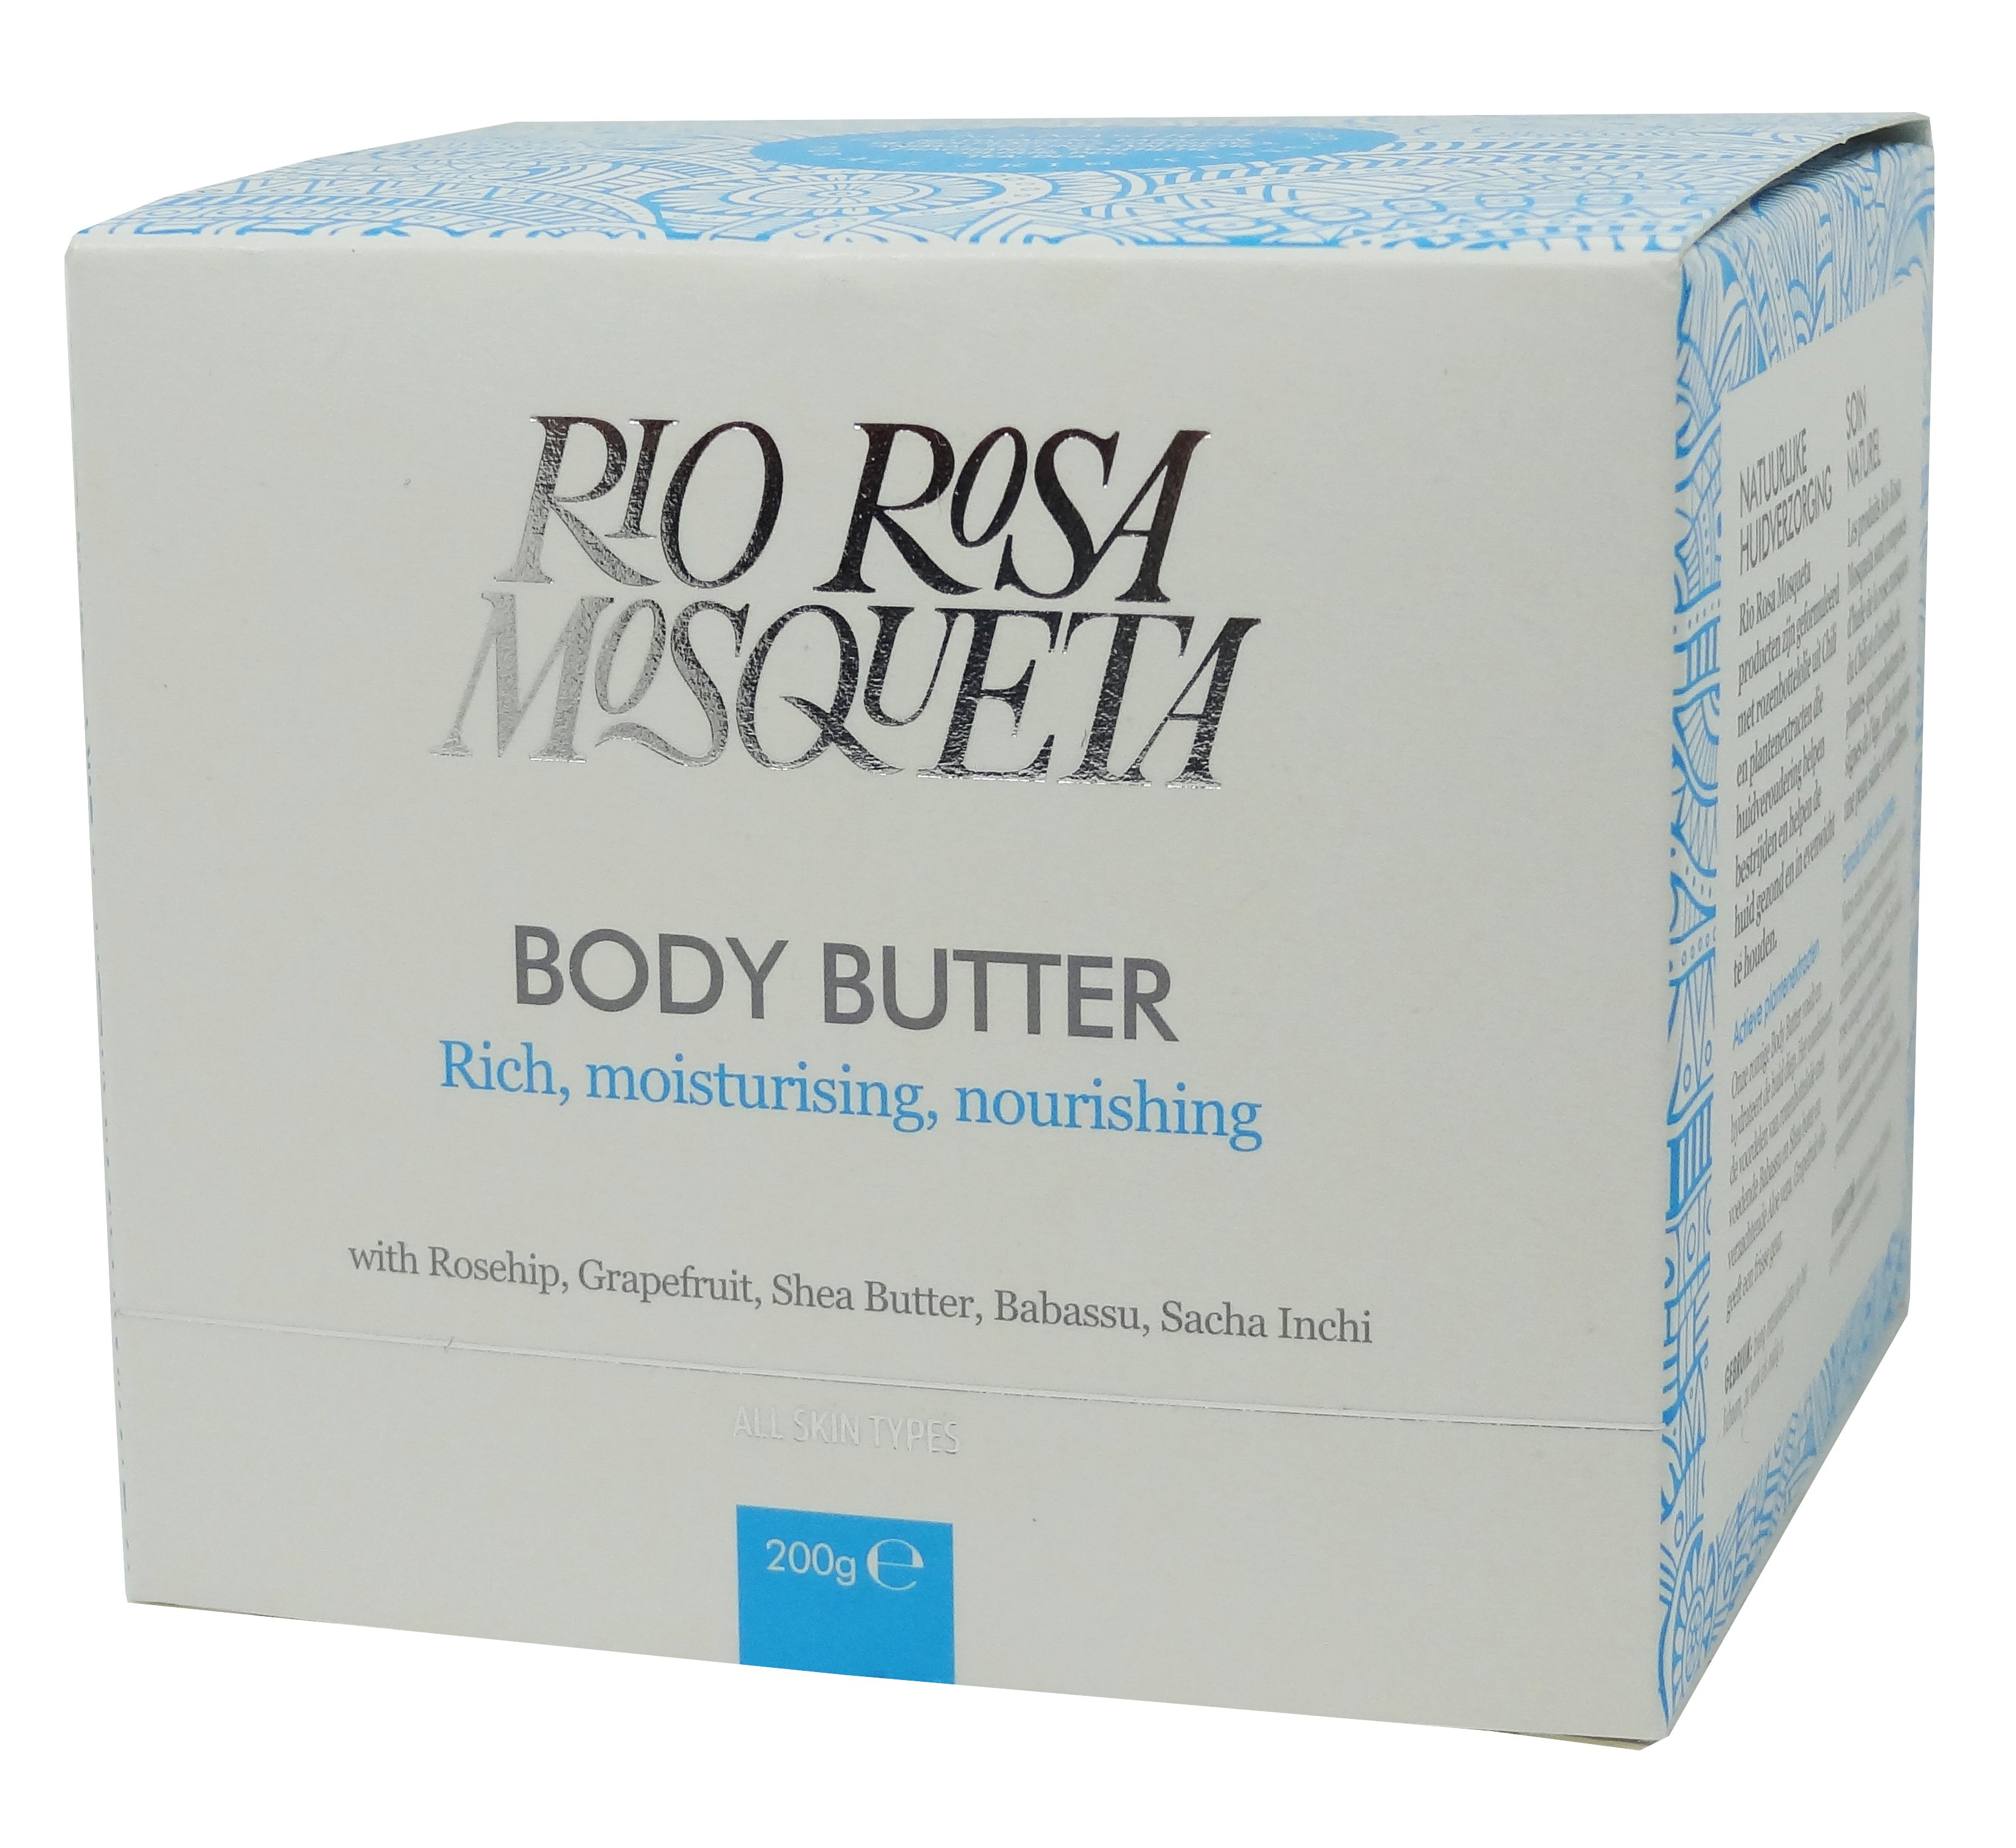 Rio Rosa Mosqueta Body Butter 200g